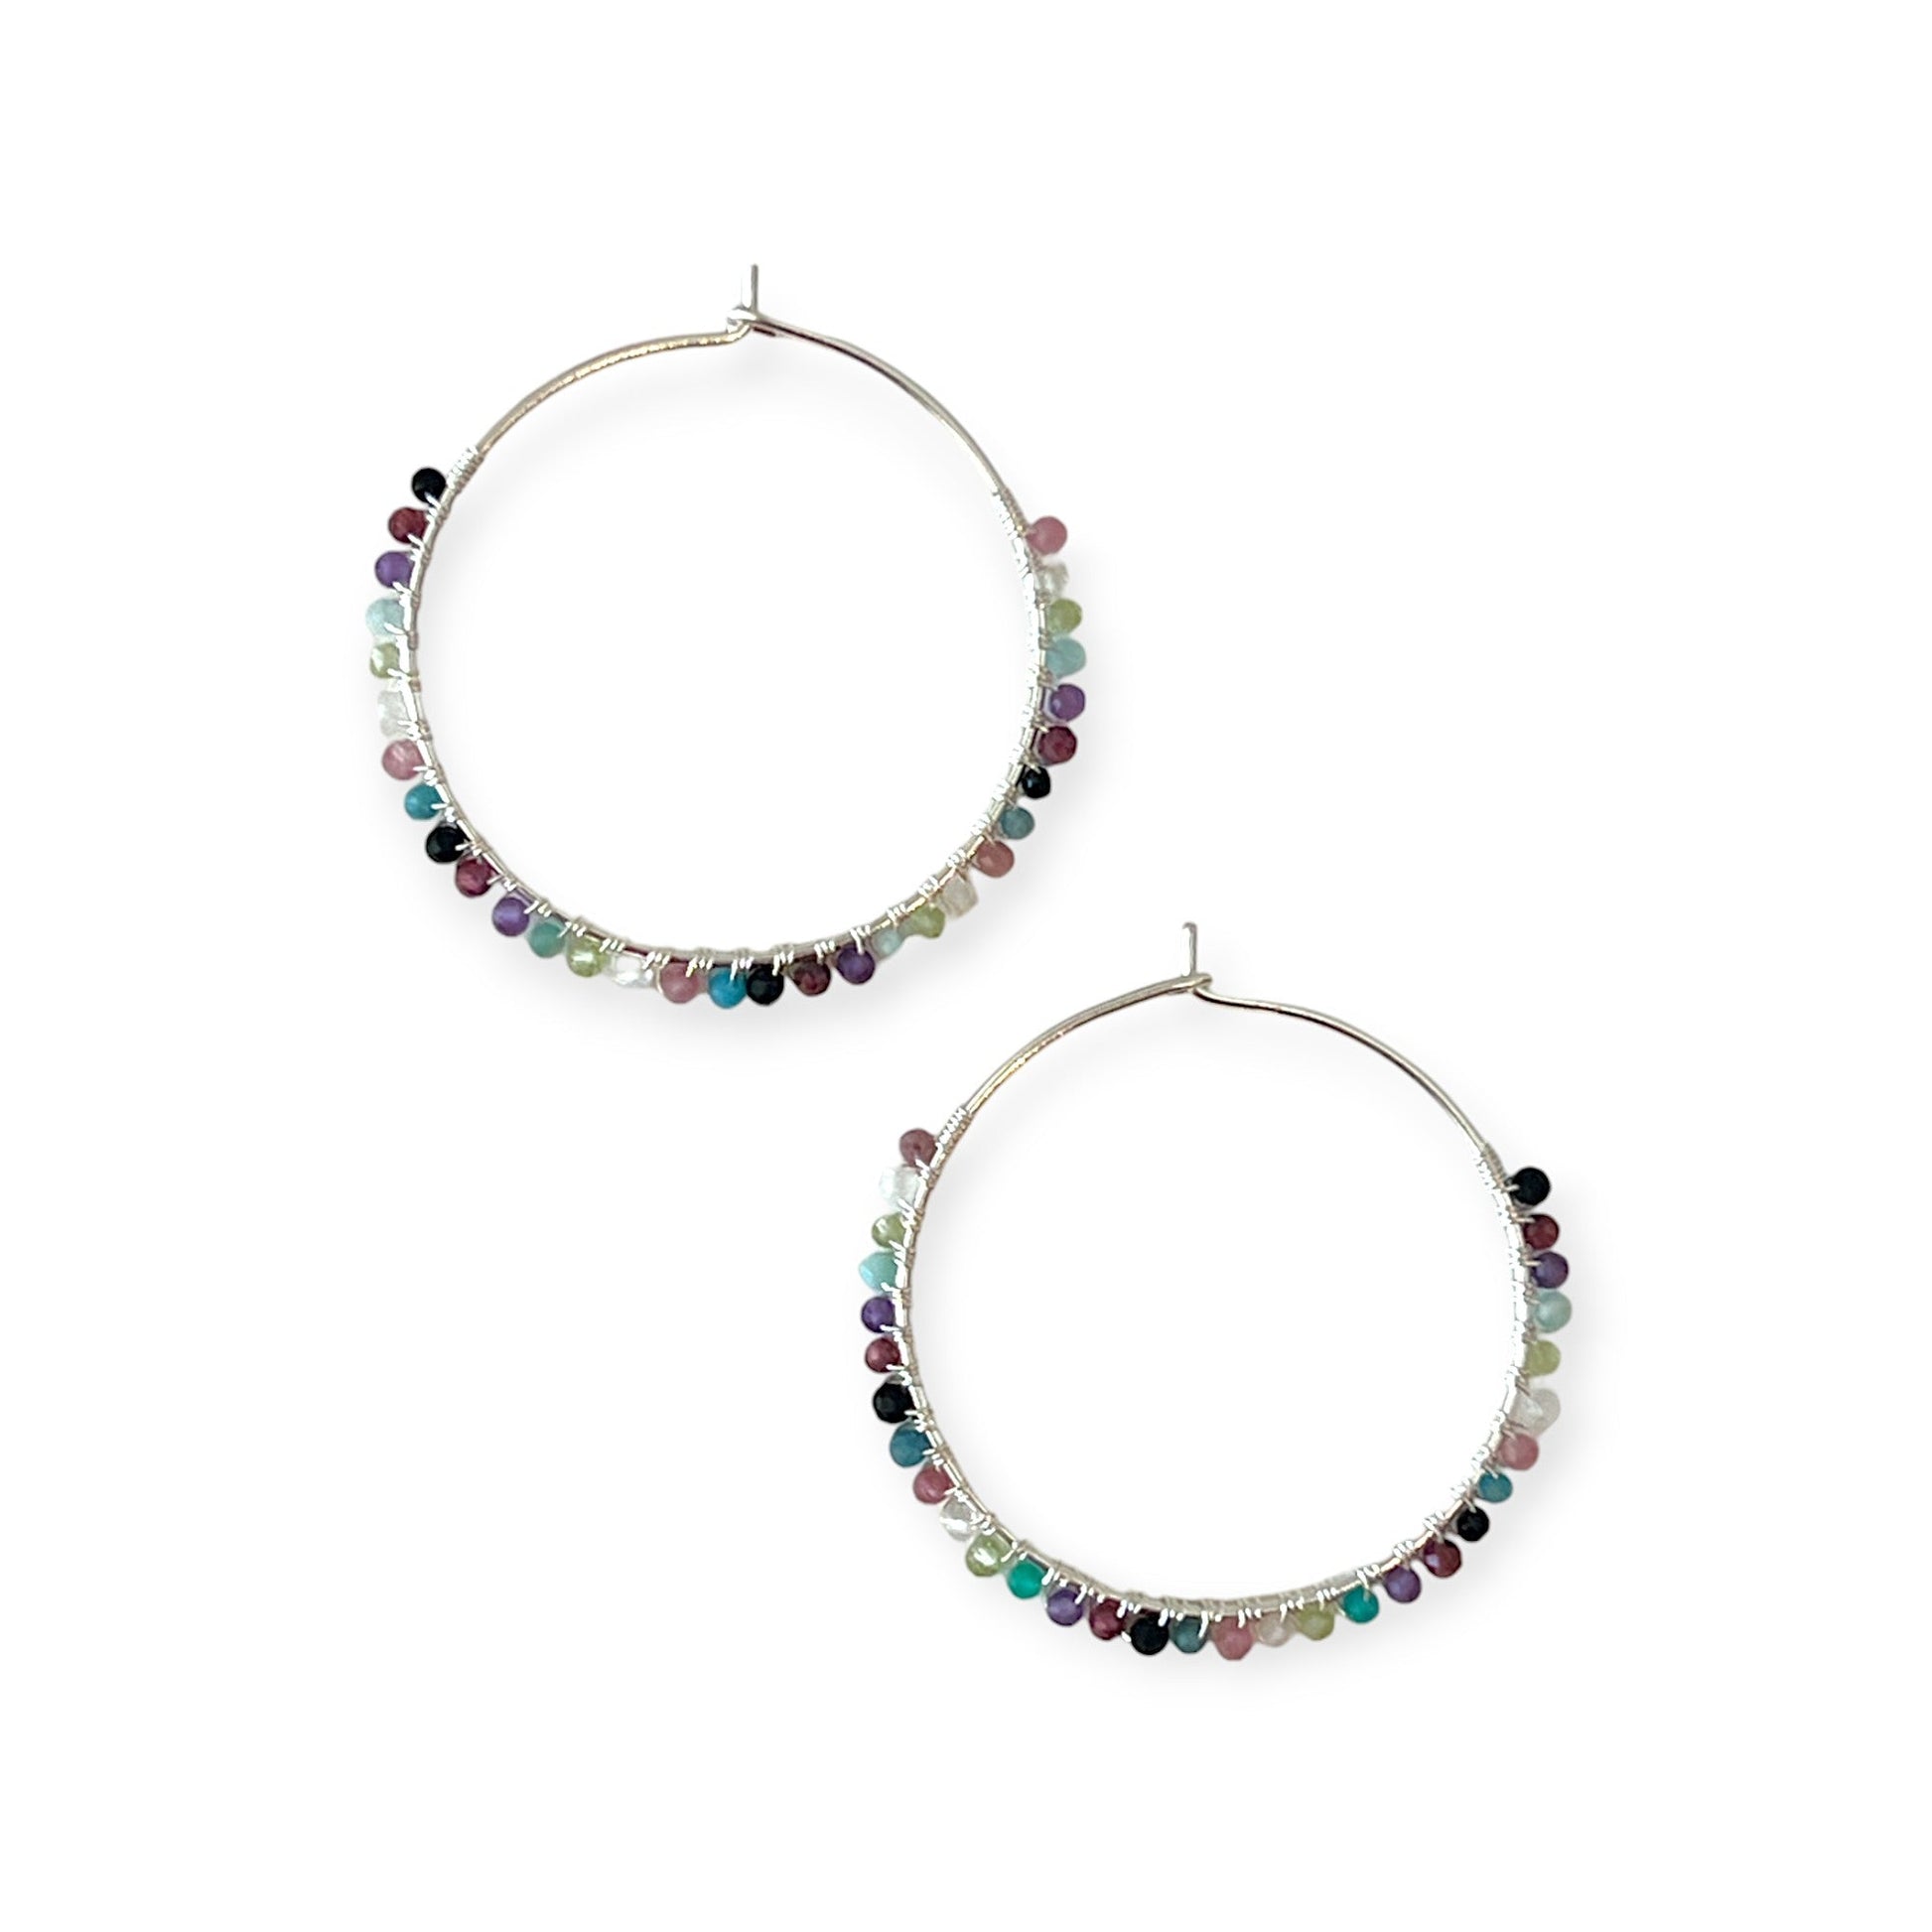 Delicate hoop earrings with colorful stones - Sundara Joon